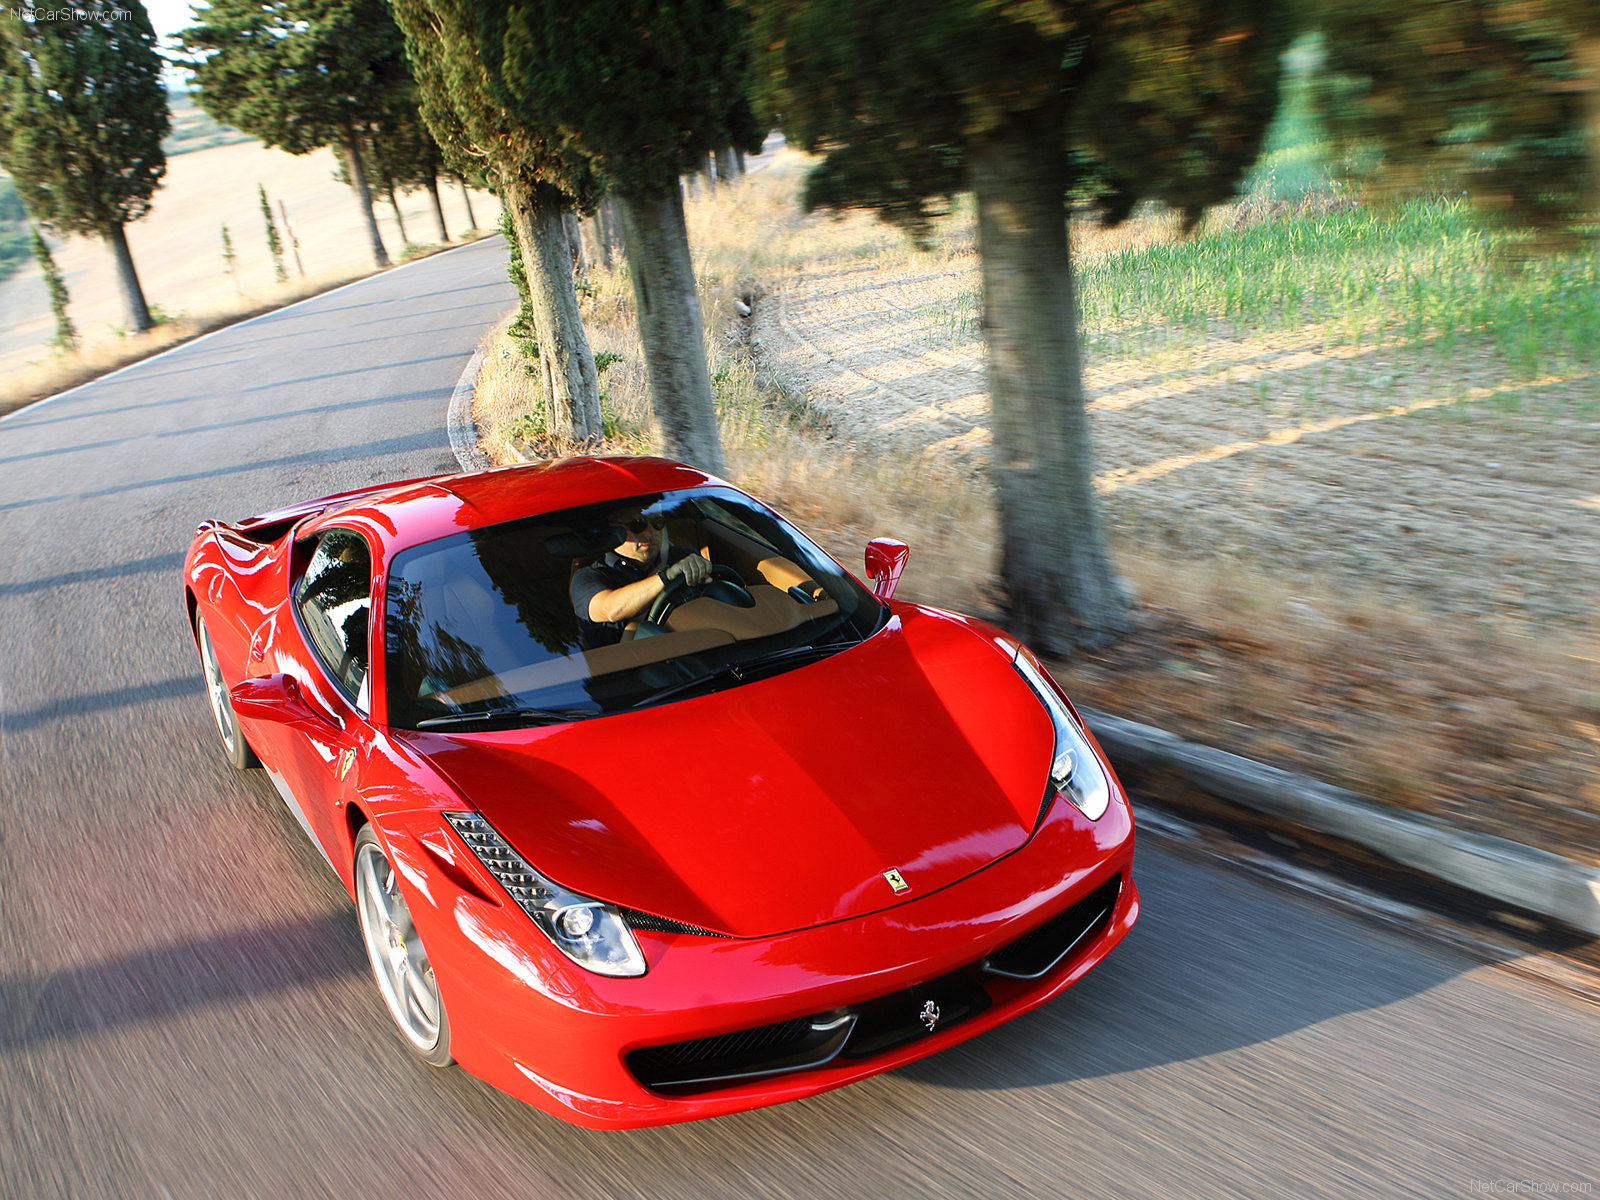 http://2.bp.blogspot.com/_PbmrOVNL_Dw/SwljHFKybPI/AAAAAAAAAo4/7fGN81yirio/s1600/Ferrari+458+Italia+2011+1.jpg